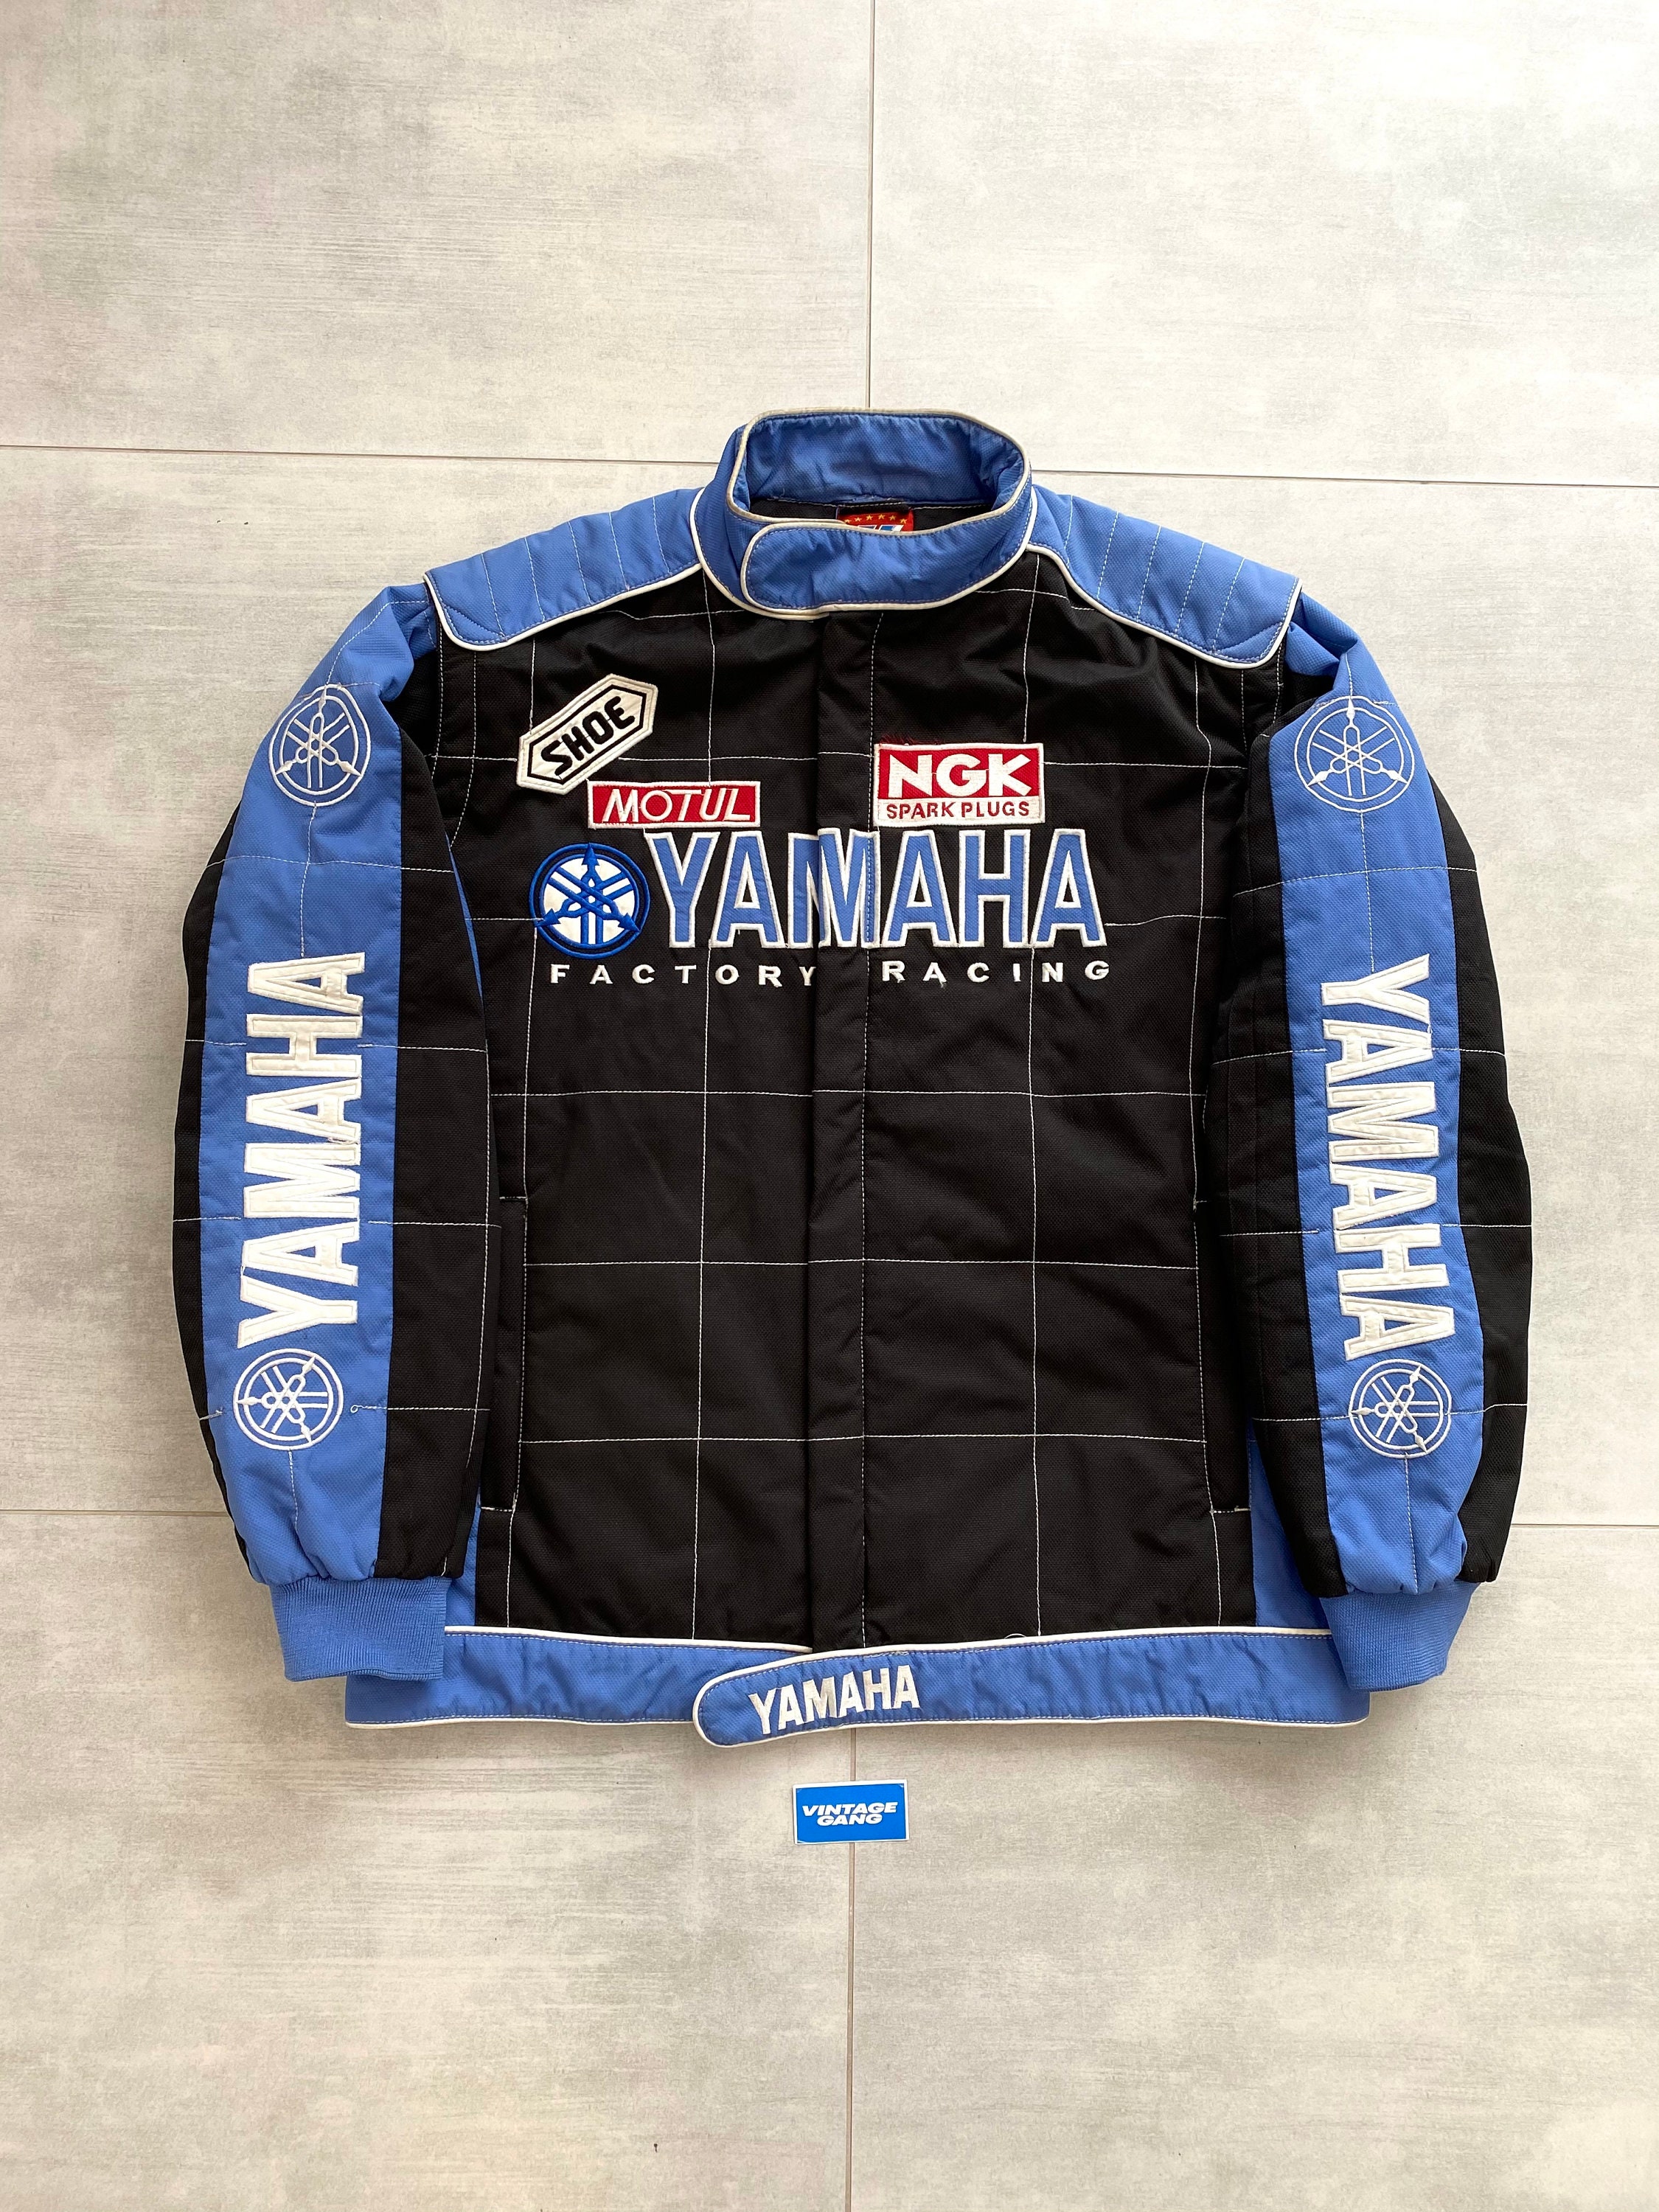 Yamaha jacket racing vintage 90s / marlboro / yamaha / | Etsy